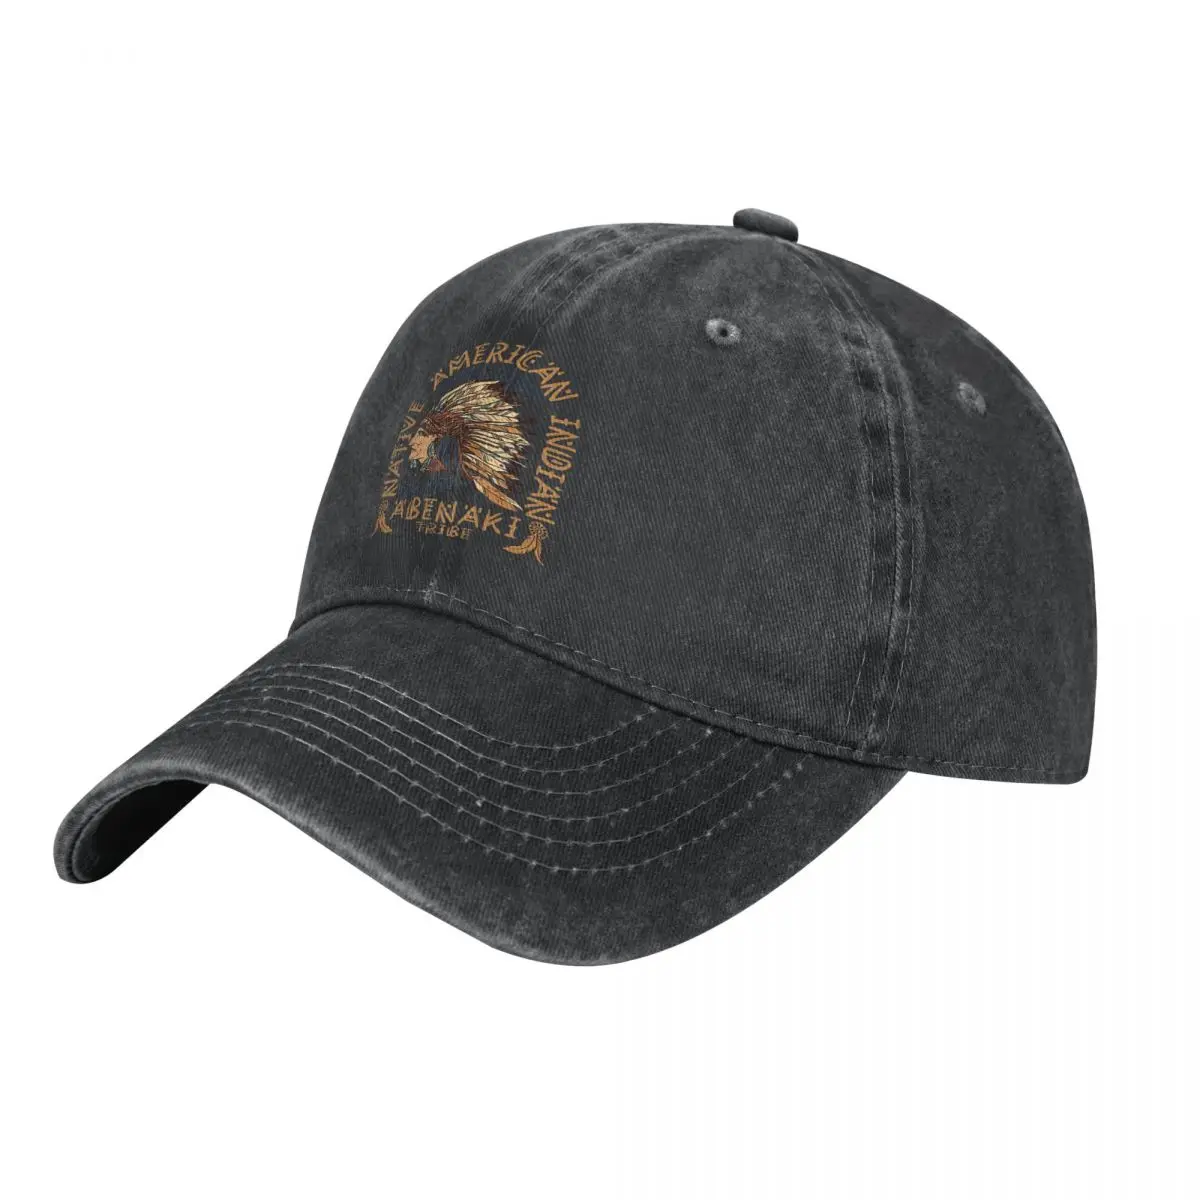 Застиранная мужская бейсболка Indian Pride Trucker Snapback Caps, папина шляпа, шляпы для гольфа индейского племени